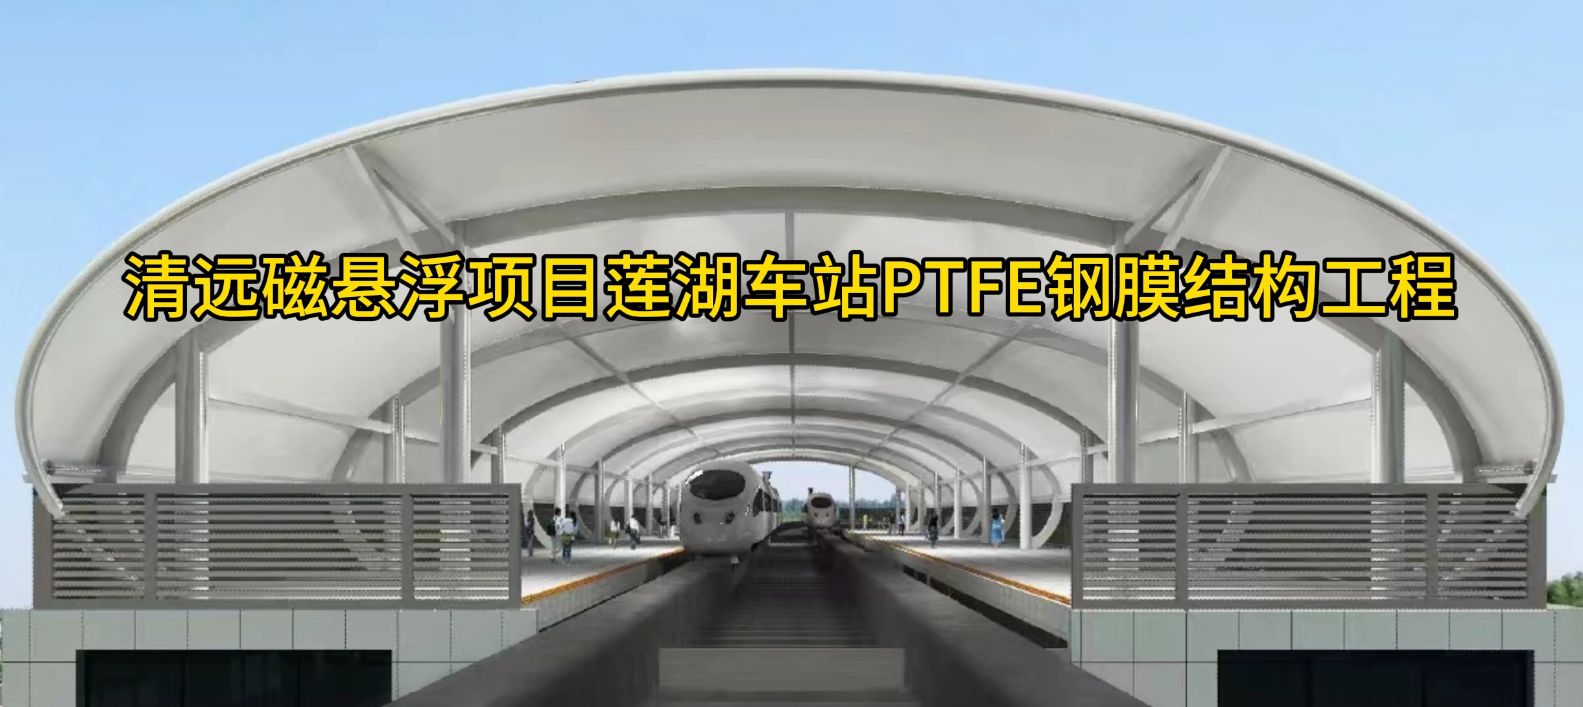 清遠磁懸浮項目蓮湖車站PTFE鋼膜結構